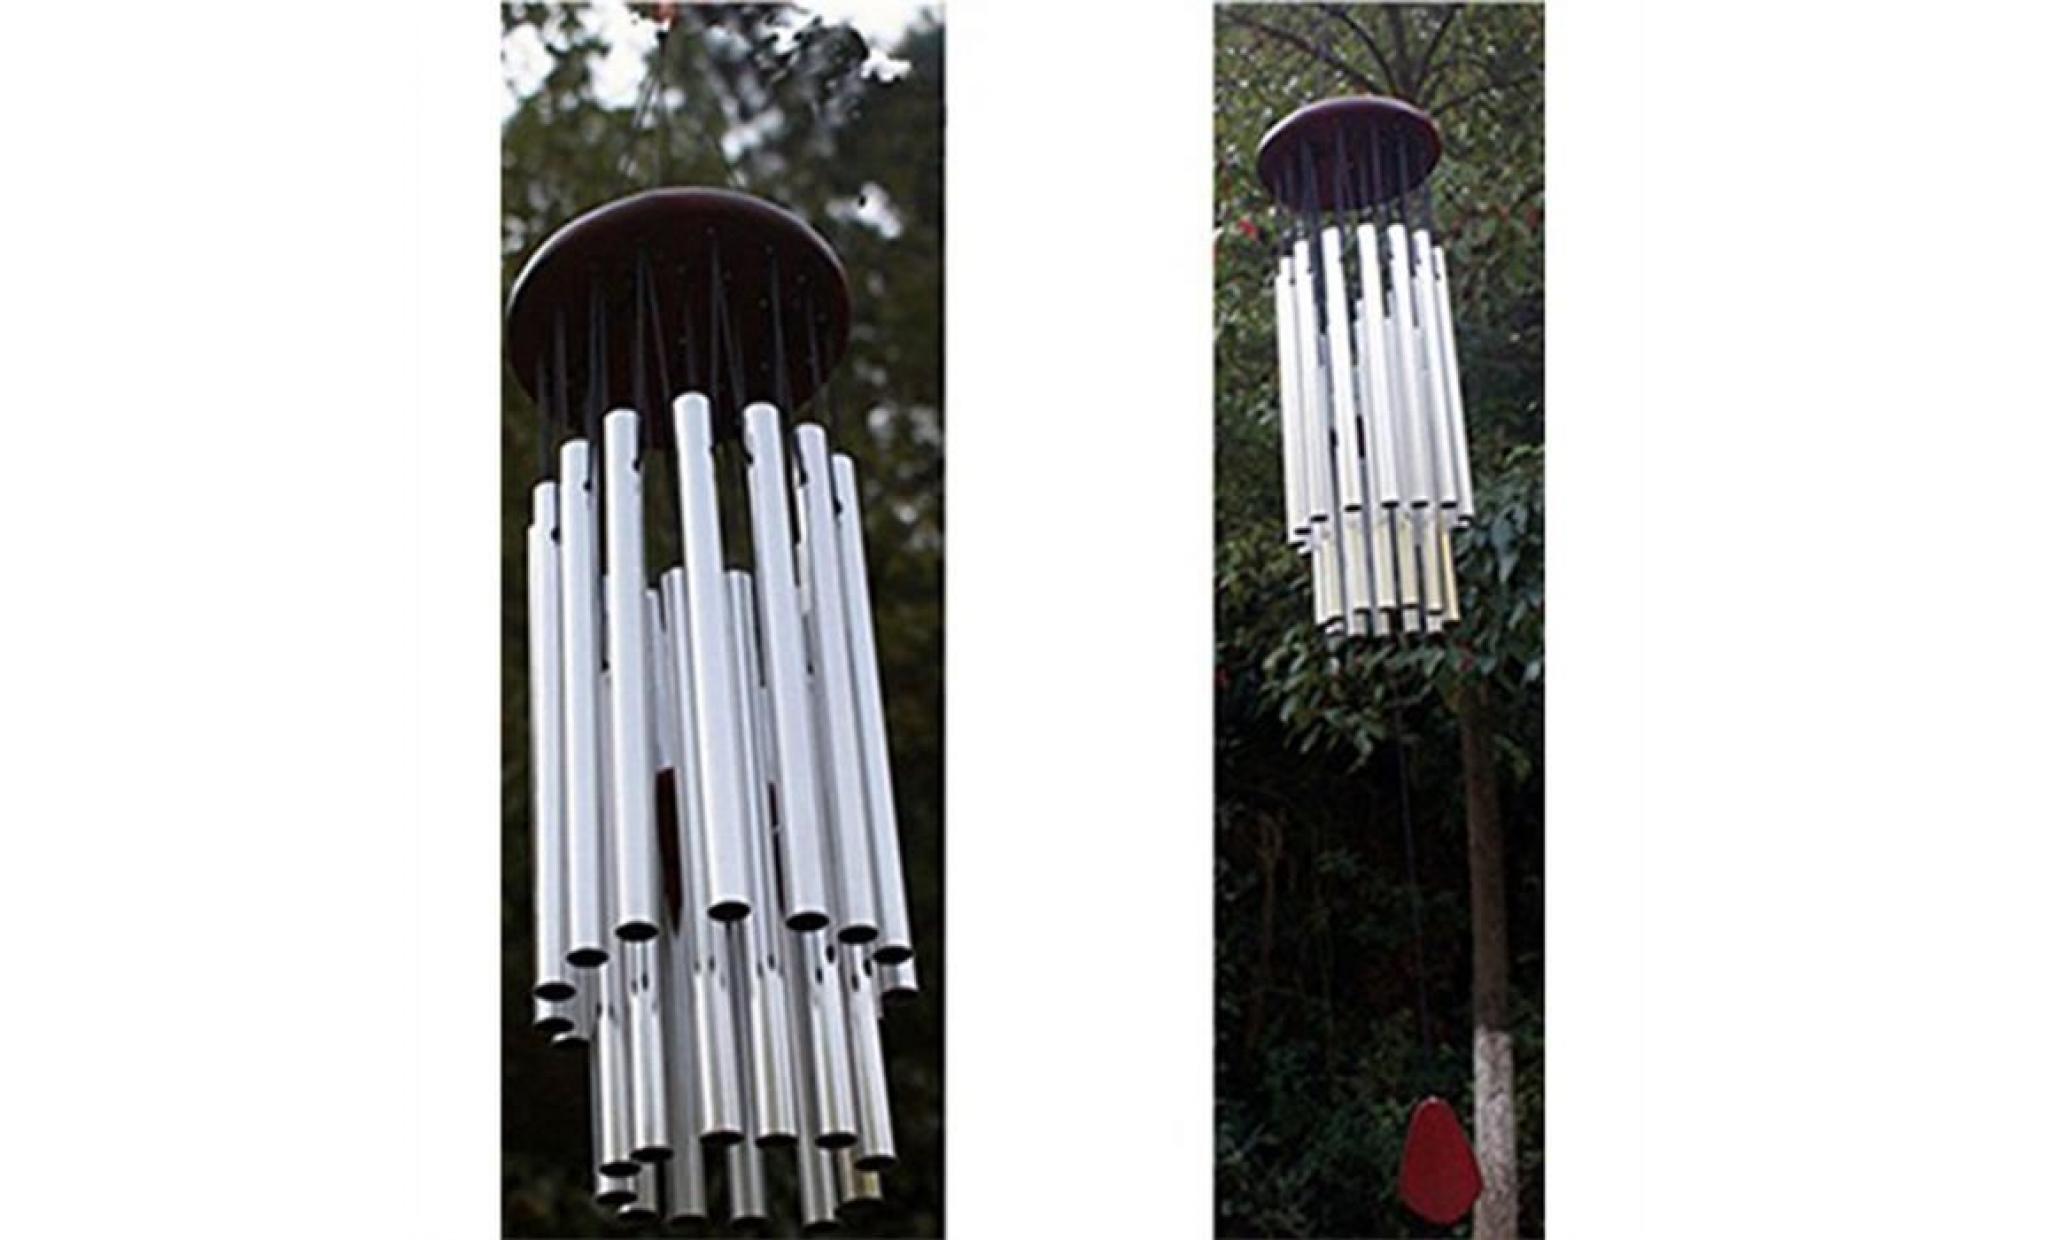 27 tubes incroyable redwood argent tube vent Église chime bells hanging décor pas cher